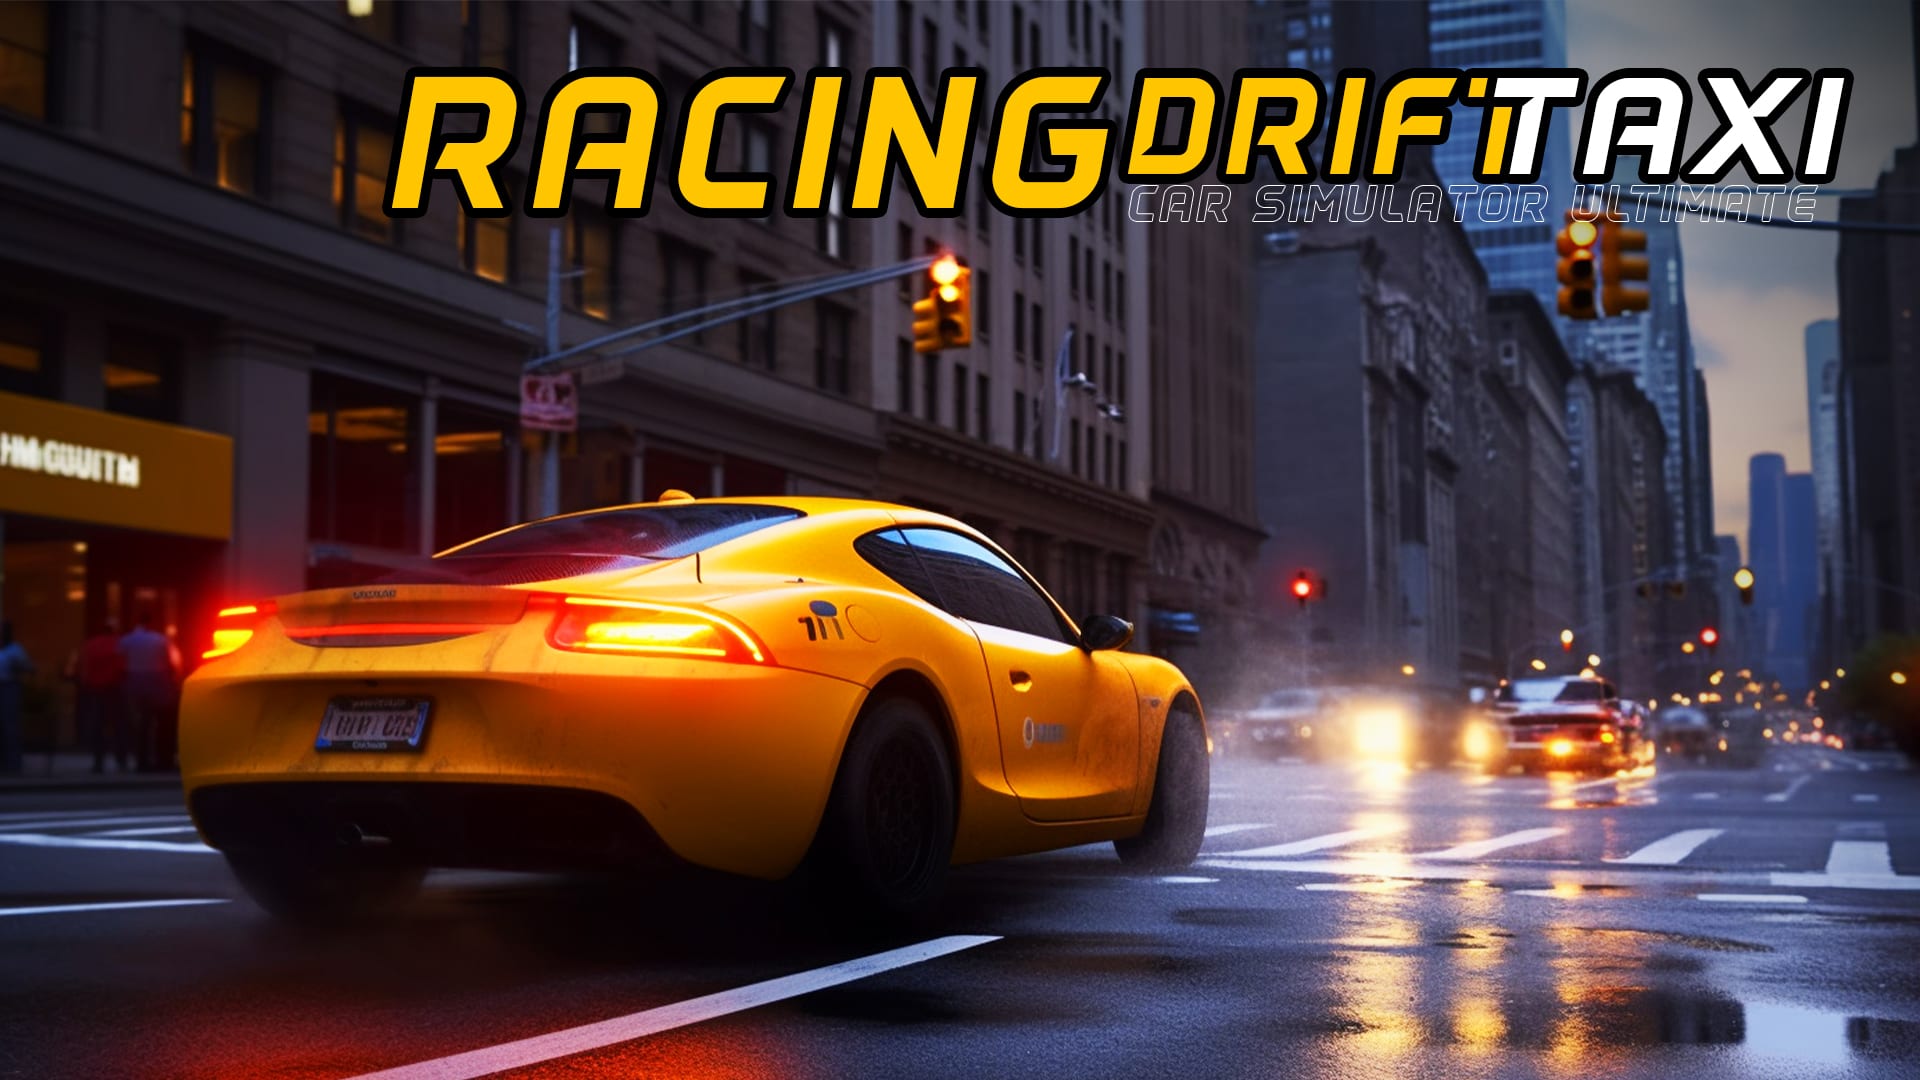 Racing Drift Taxi Car Simulator Ultimate 1